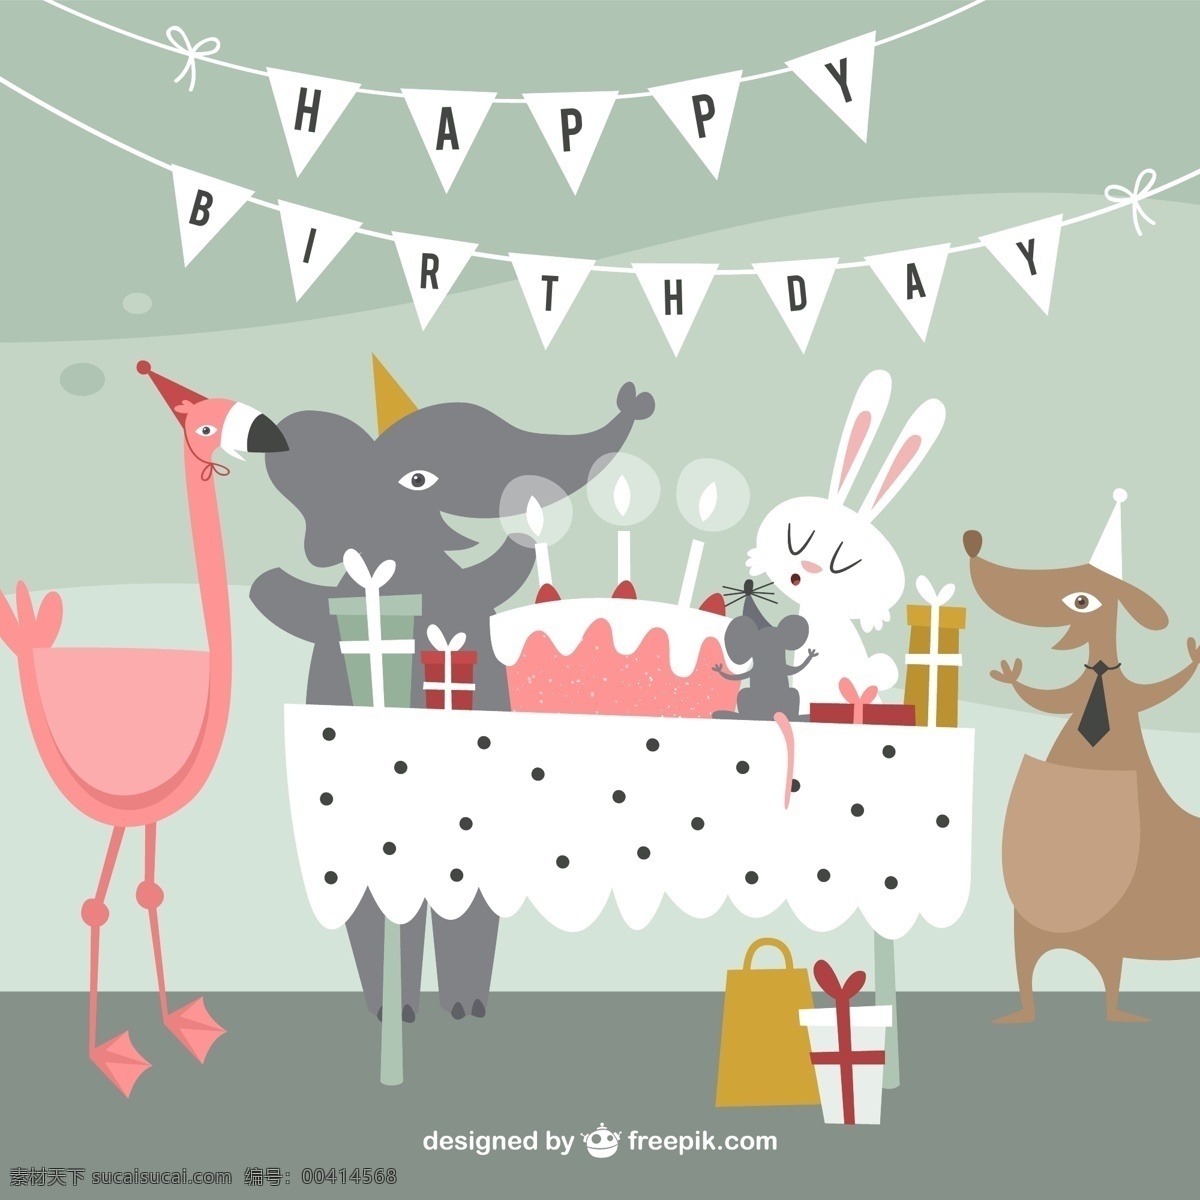 可爱 动物 生日 派对 矢量 三角拉旗 大象 火烈鸟 袋鼠 兔子 老鼠 礼物 生日蛋糕 happy birthday 矢量图 最新矢量图 画册设计